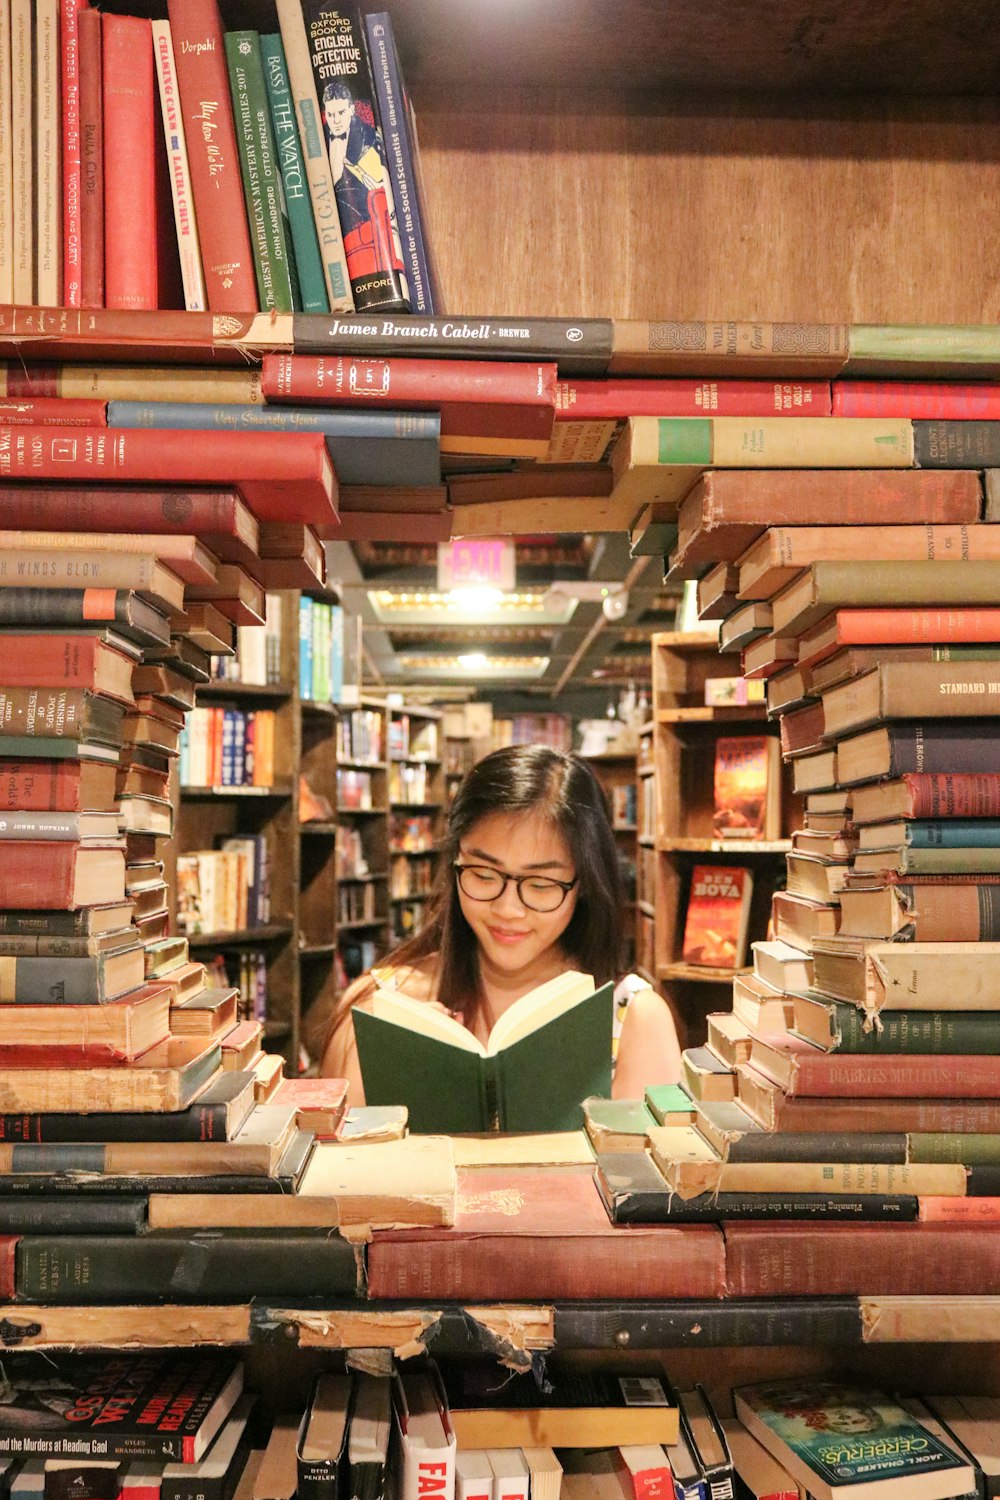 mujer con camisa verde sentada en los libros